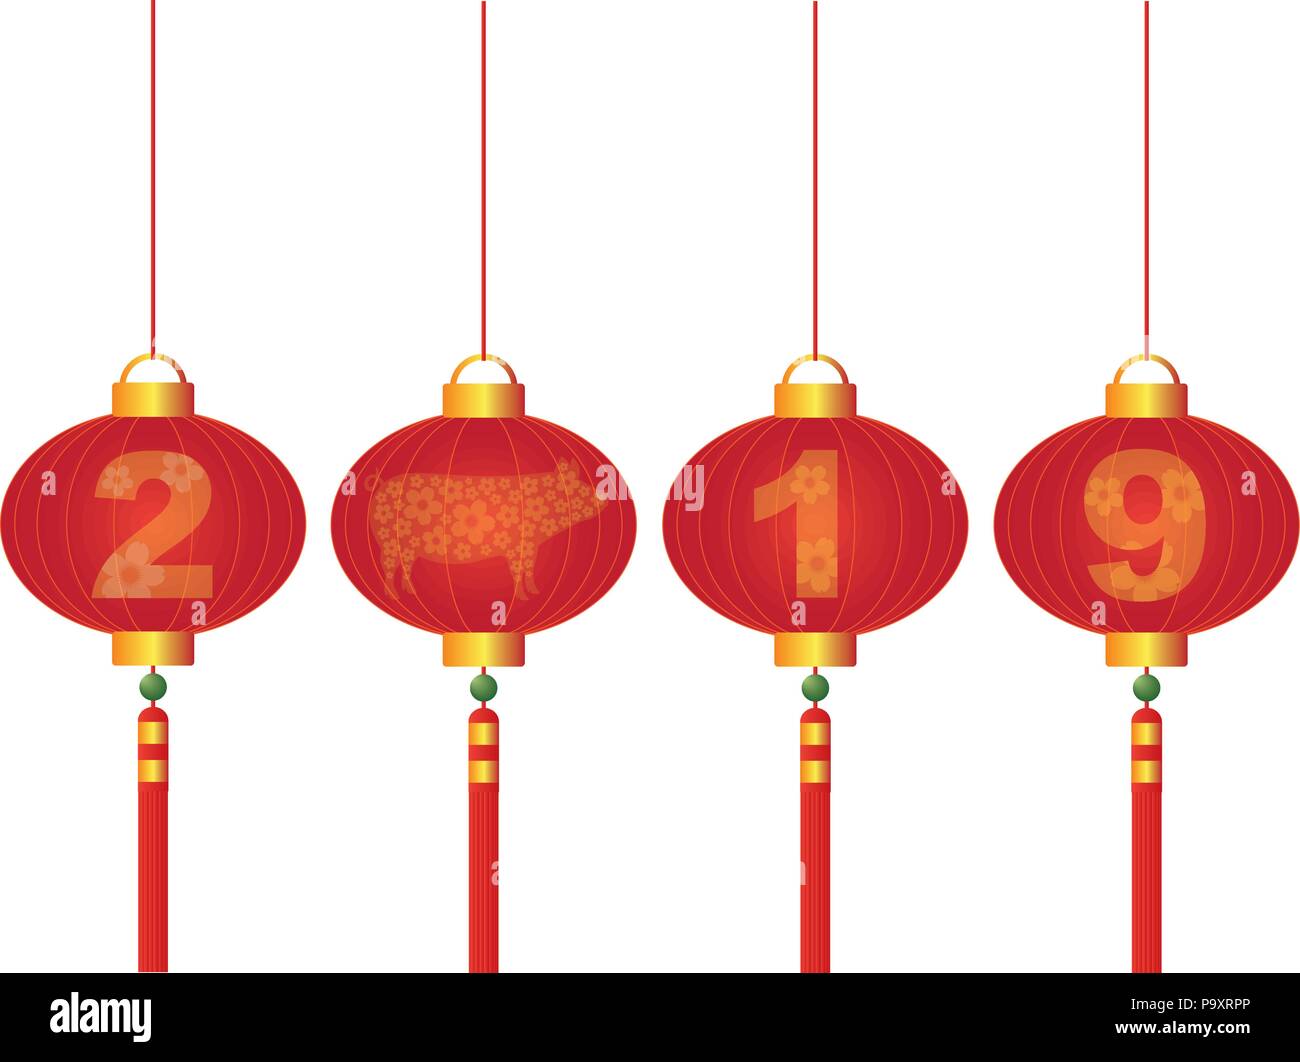 2019 Nouvelle Année lunaire chinoise du cochon lanterne rouge avec Fleur de cerisier isolé sur fond blanc Illustration Illustration de Vecteur